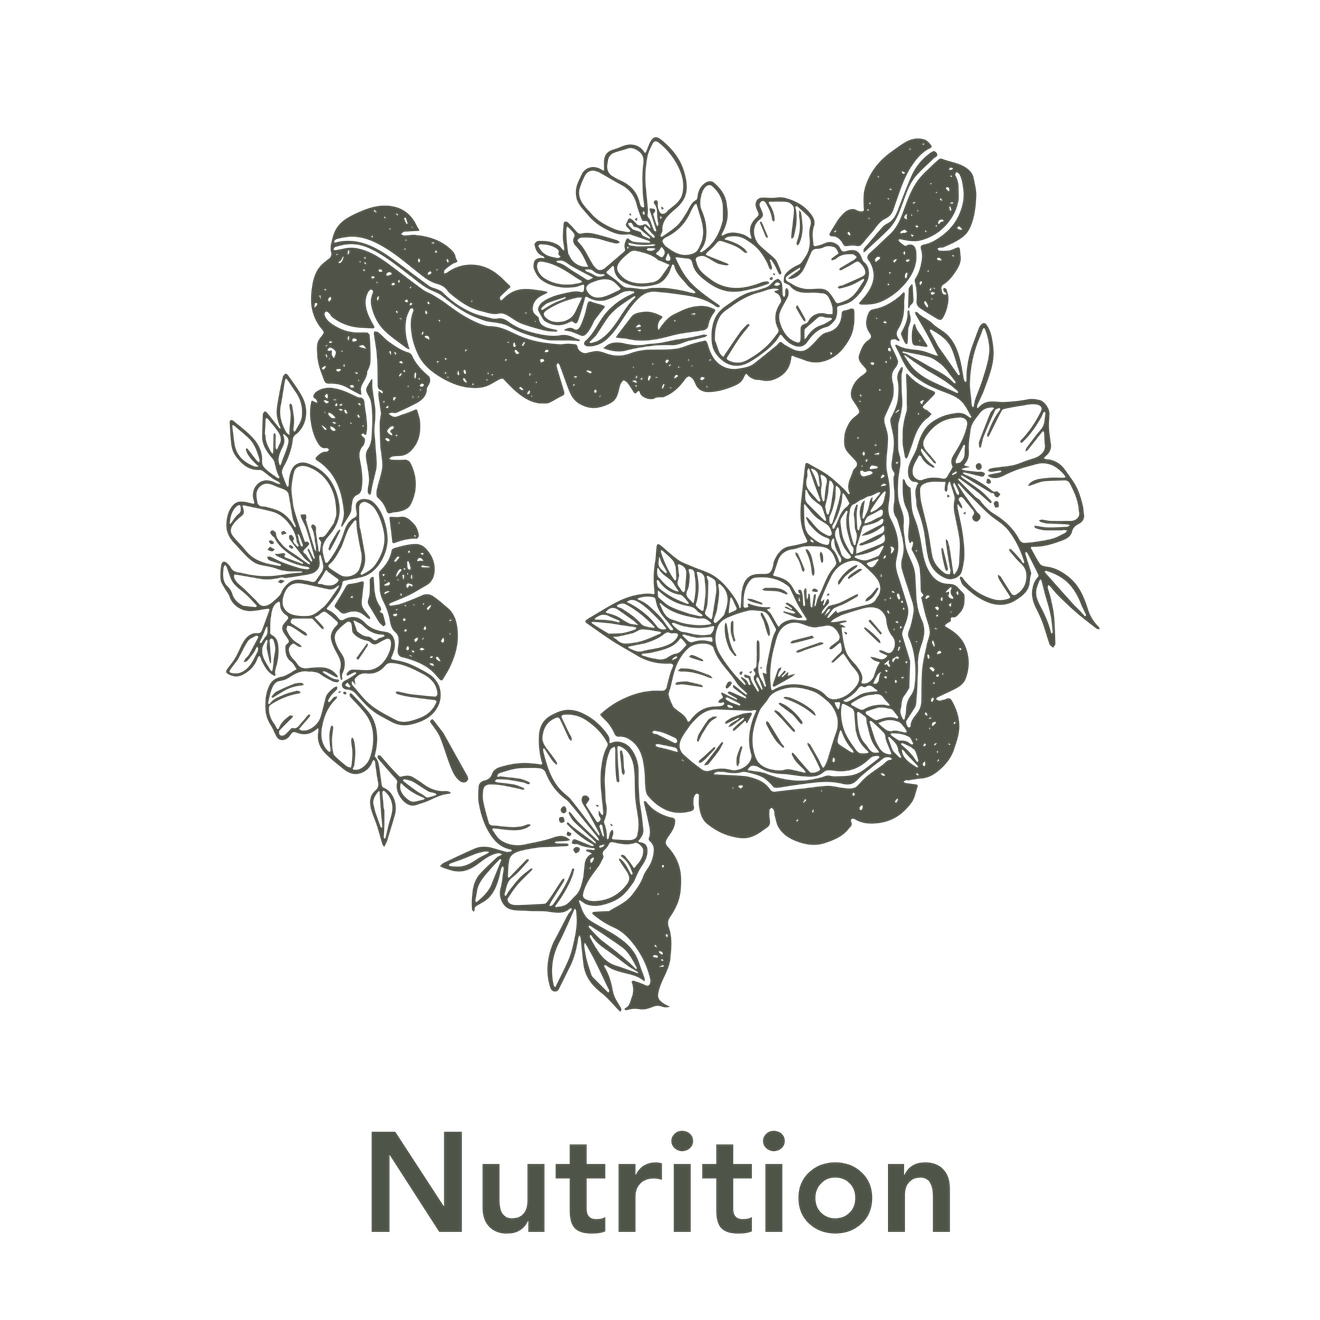 SubLuna Illustration - Nutrition